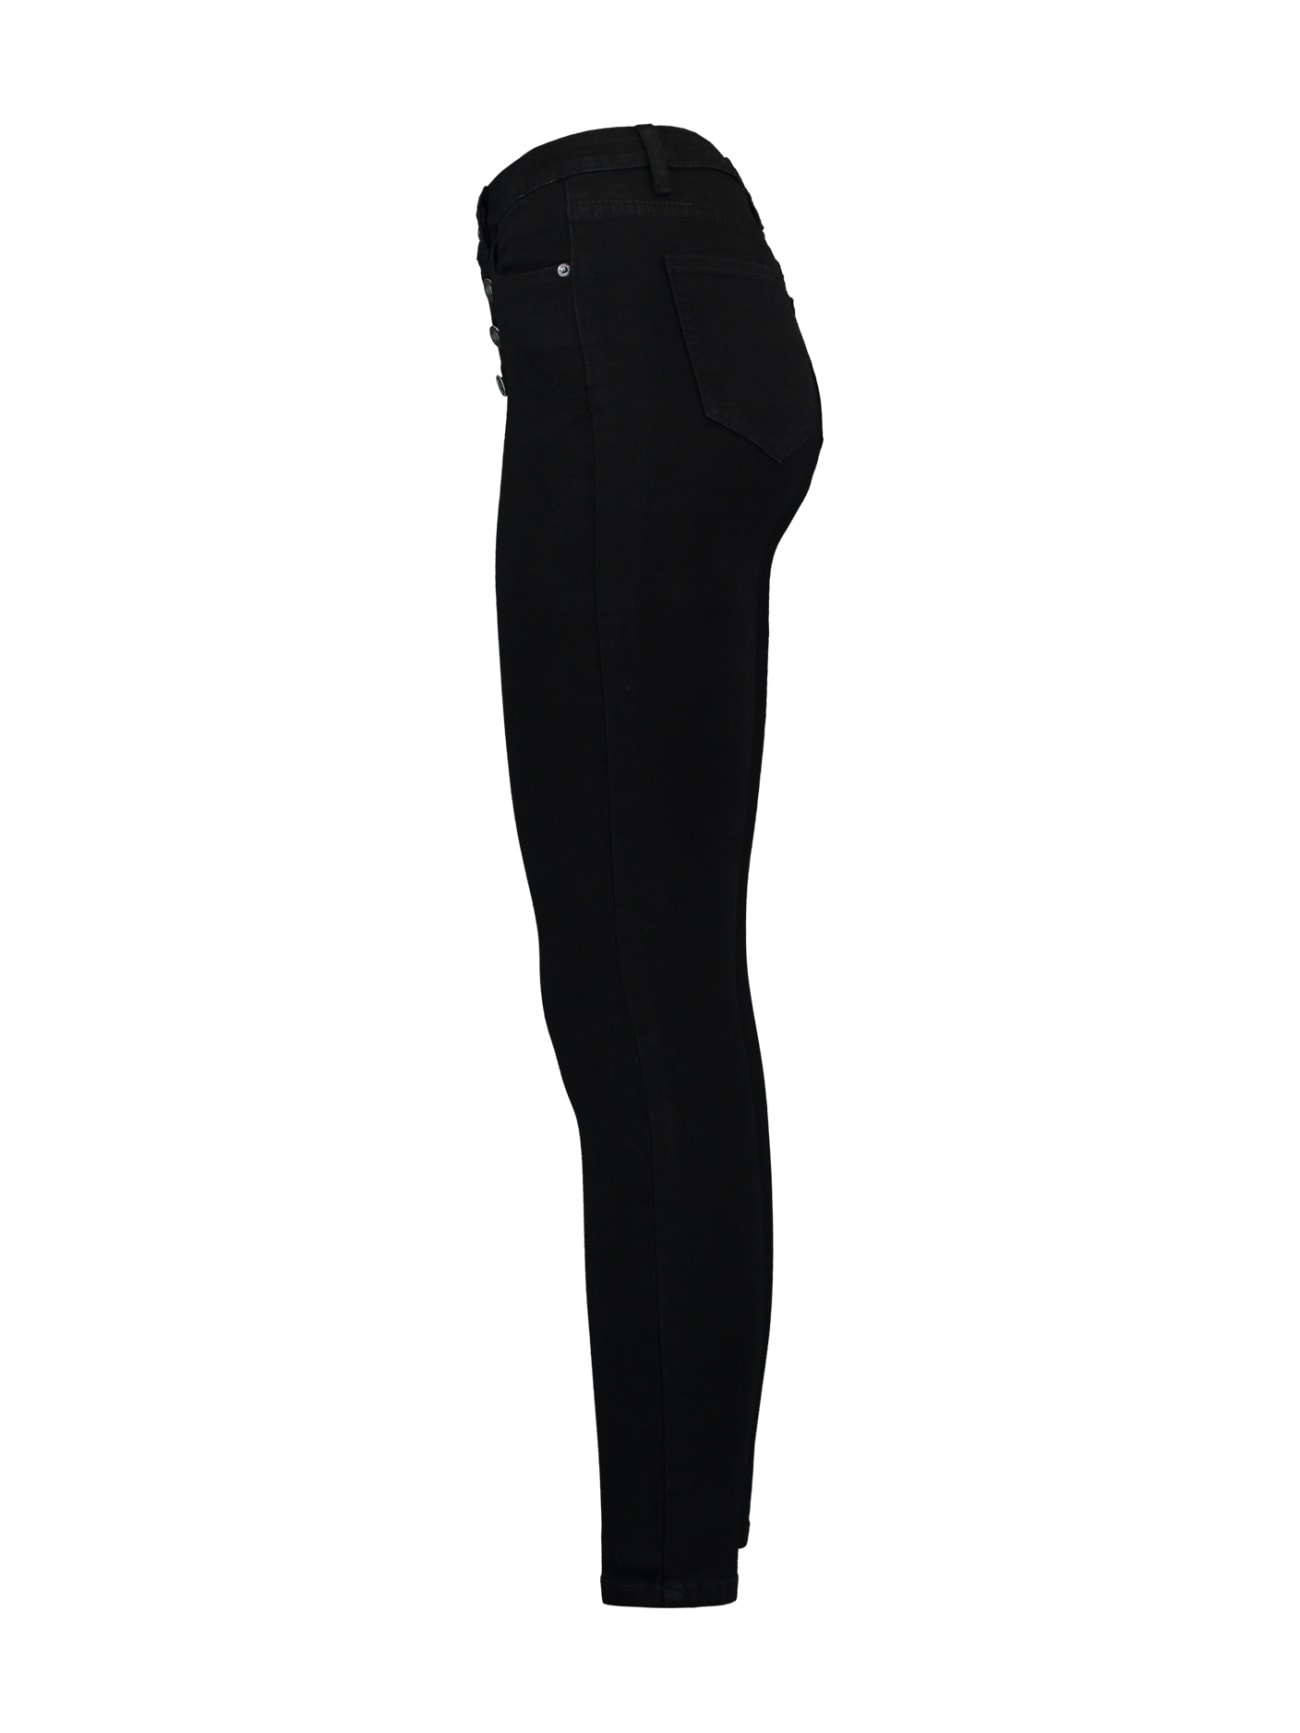 HaILY’S 5-Pocket-Jeans »Modell: LG HW C JN Romina«